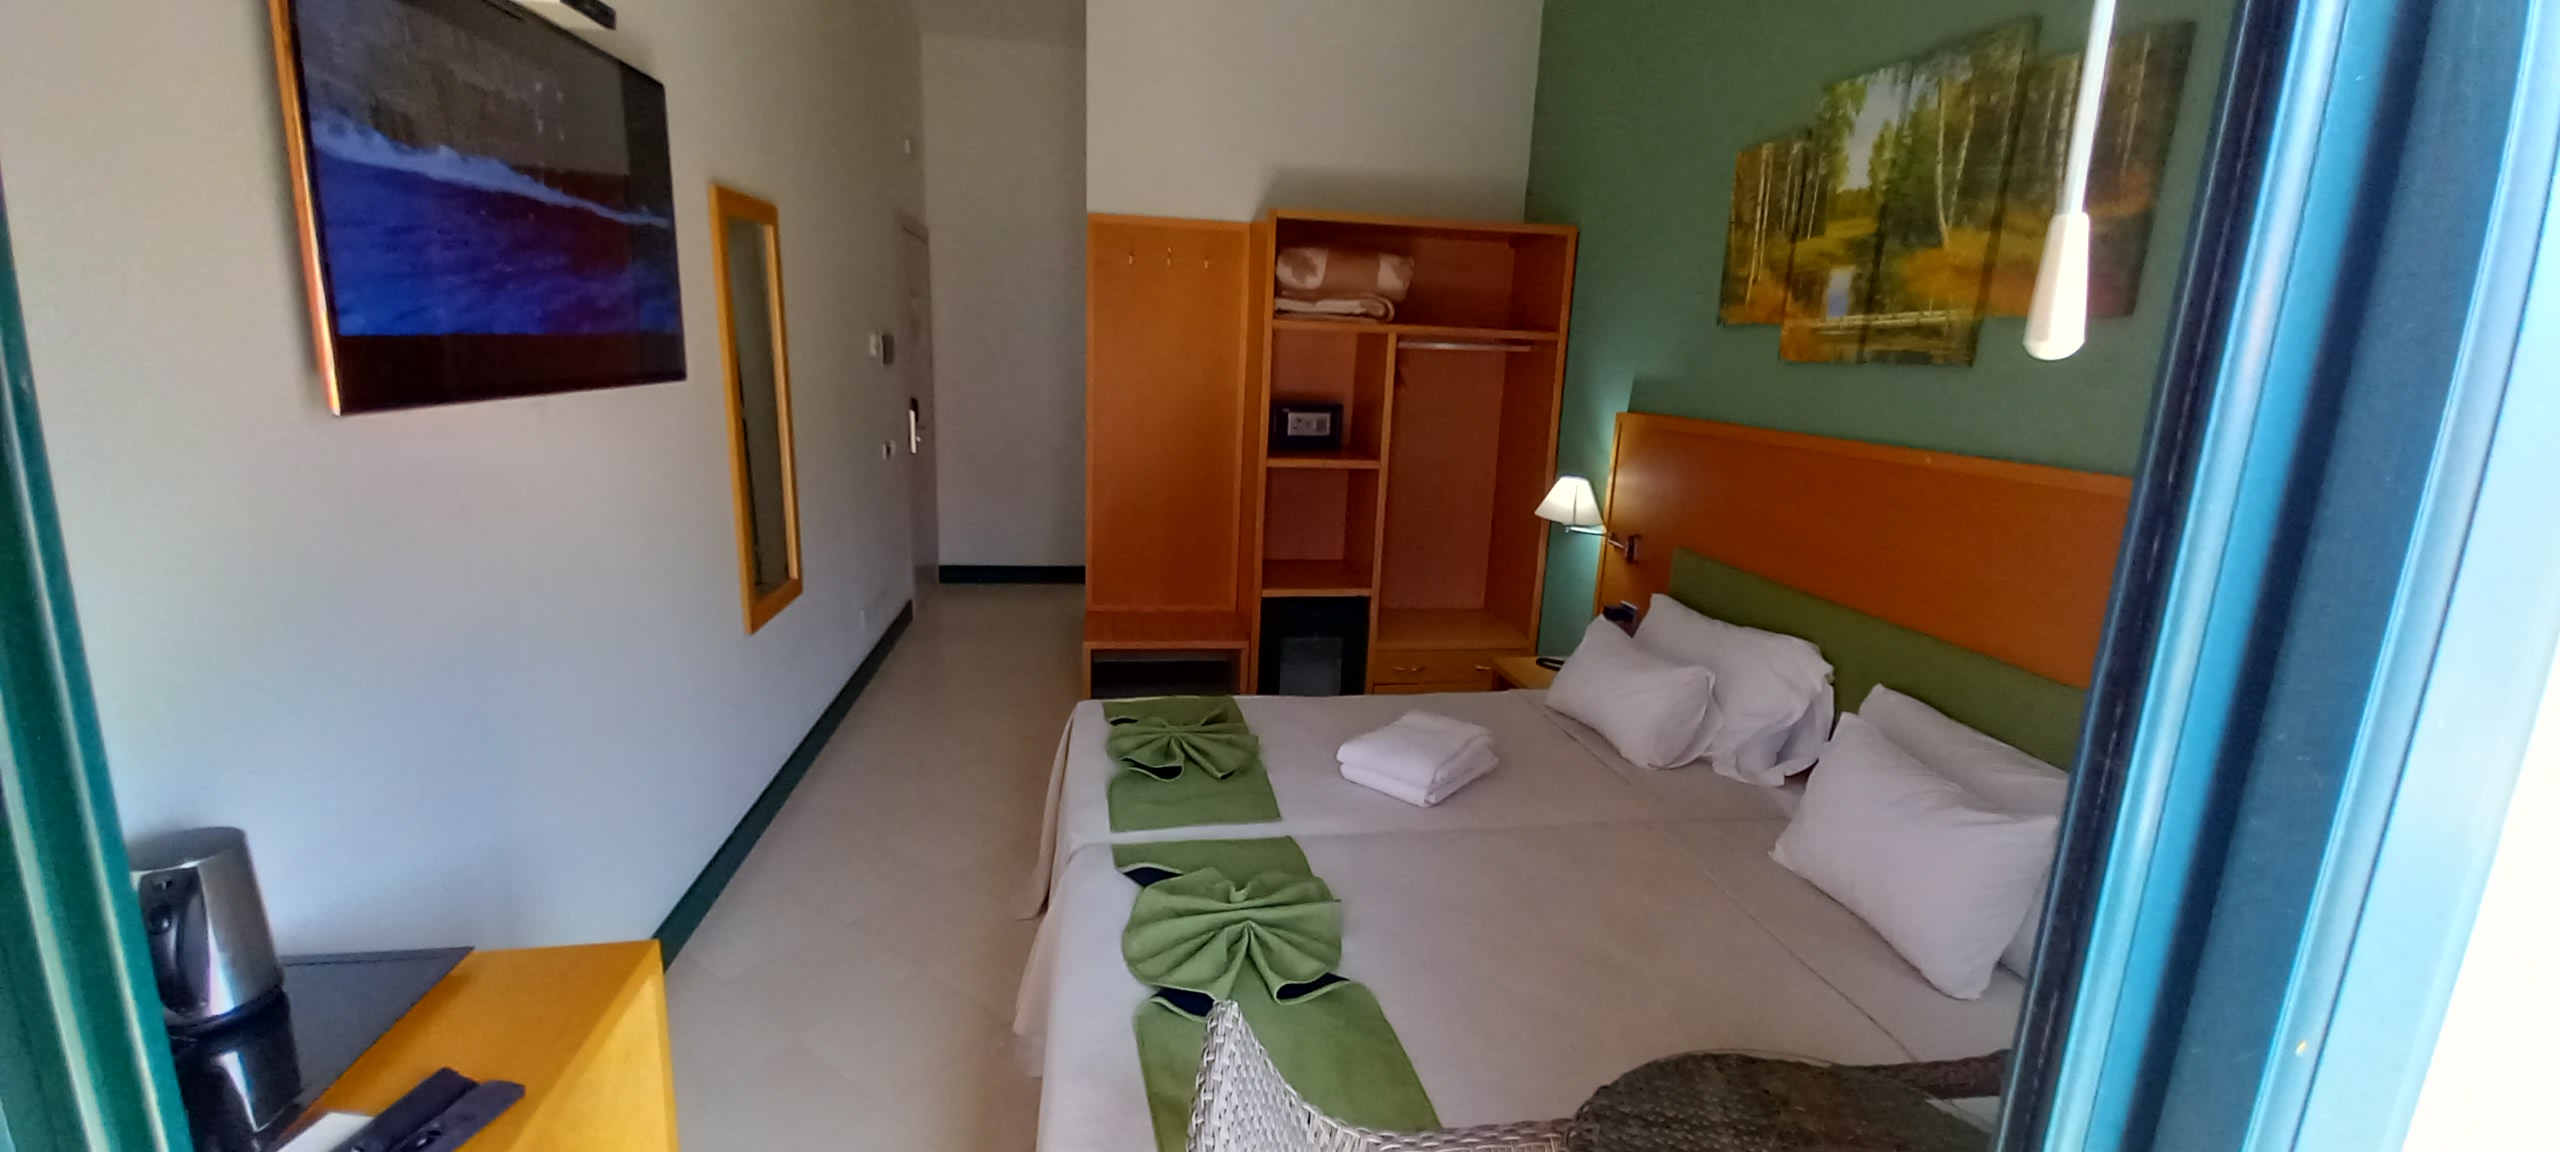 Hotel Pombas Brancas Resort